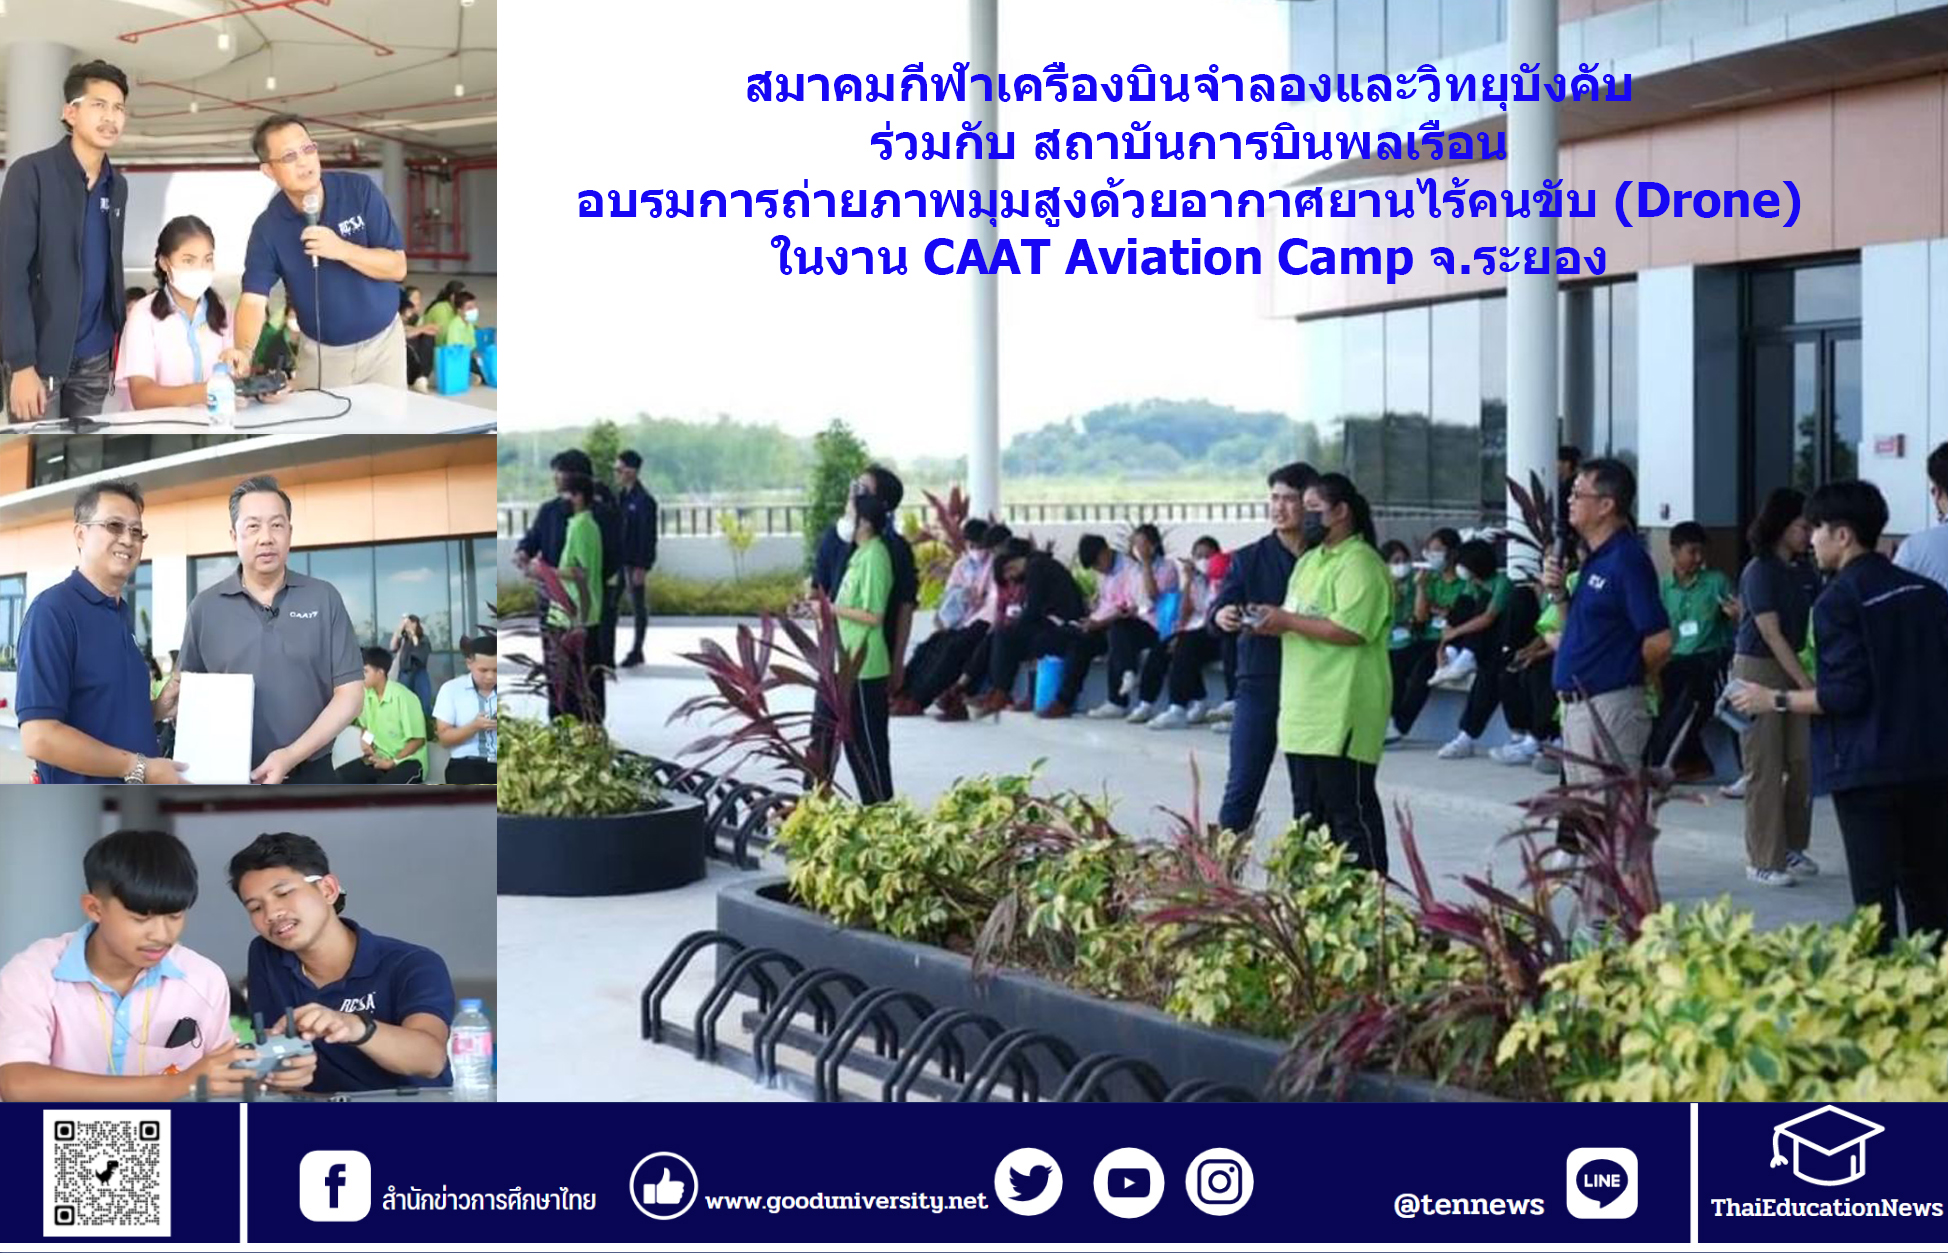 สมาคมกีฬาเครื่องบินจำลองและวิทยุบังคับ ร่วมกับ สถาบันการบินพลเรือน อบรมการถ่ายภาพมุมสูงด้วยอากาศยานไร้คนขับ (Drone) ในงาน CAAT Aviation Camp